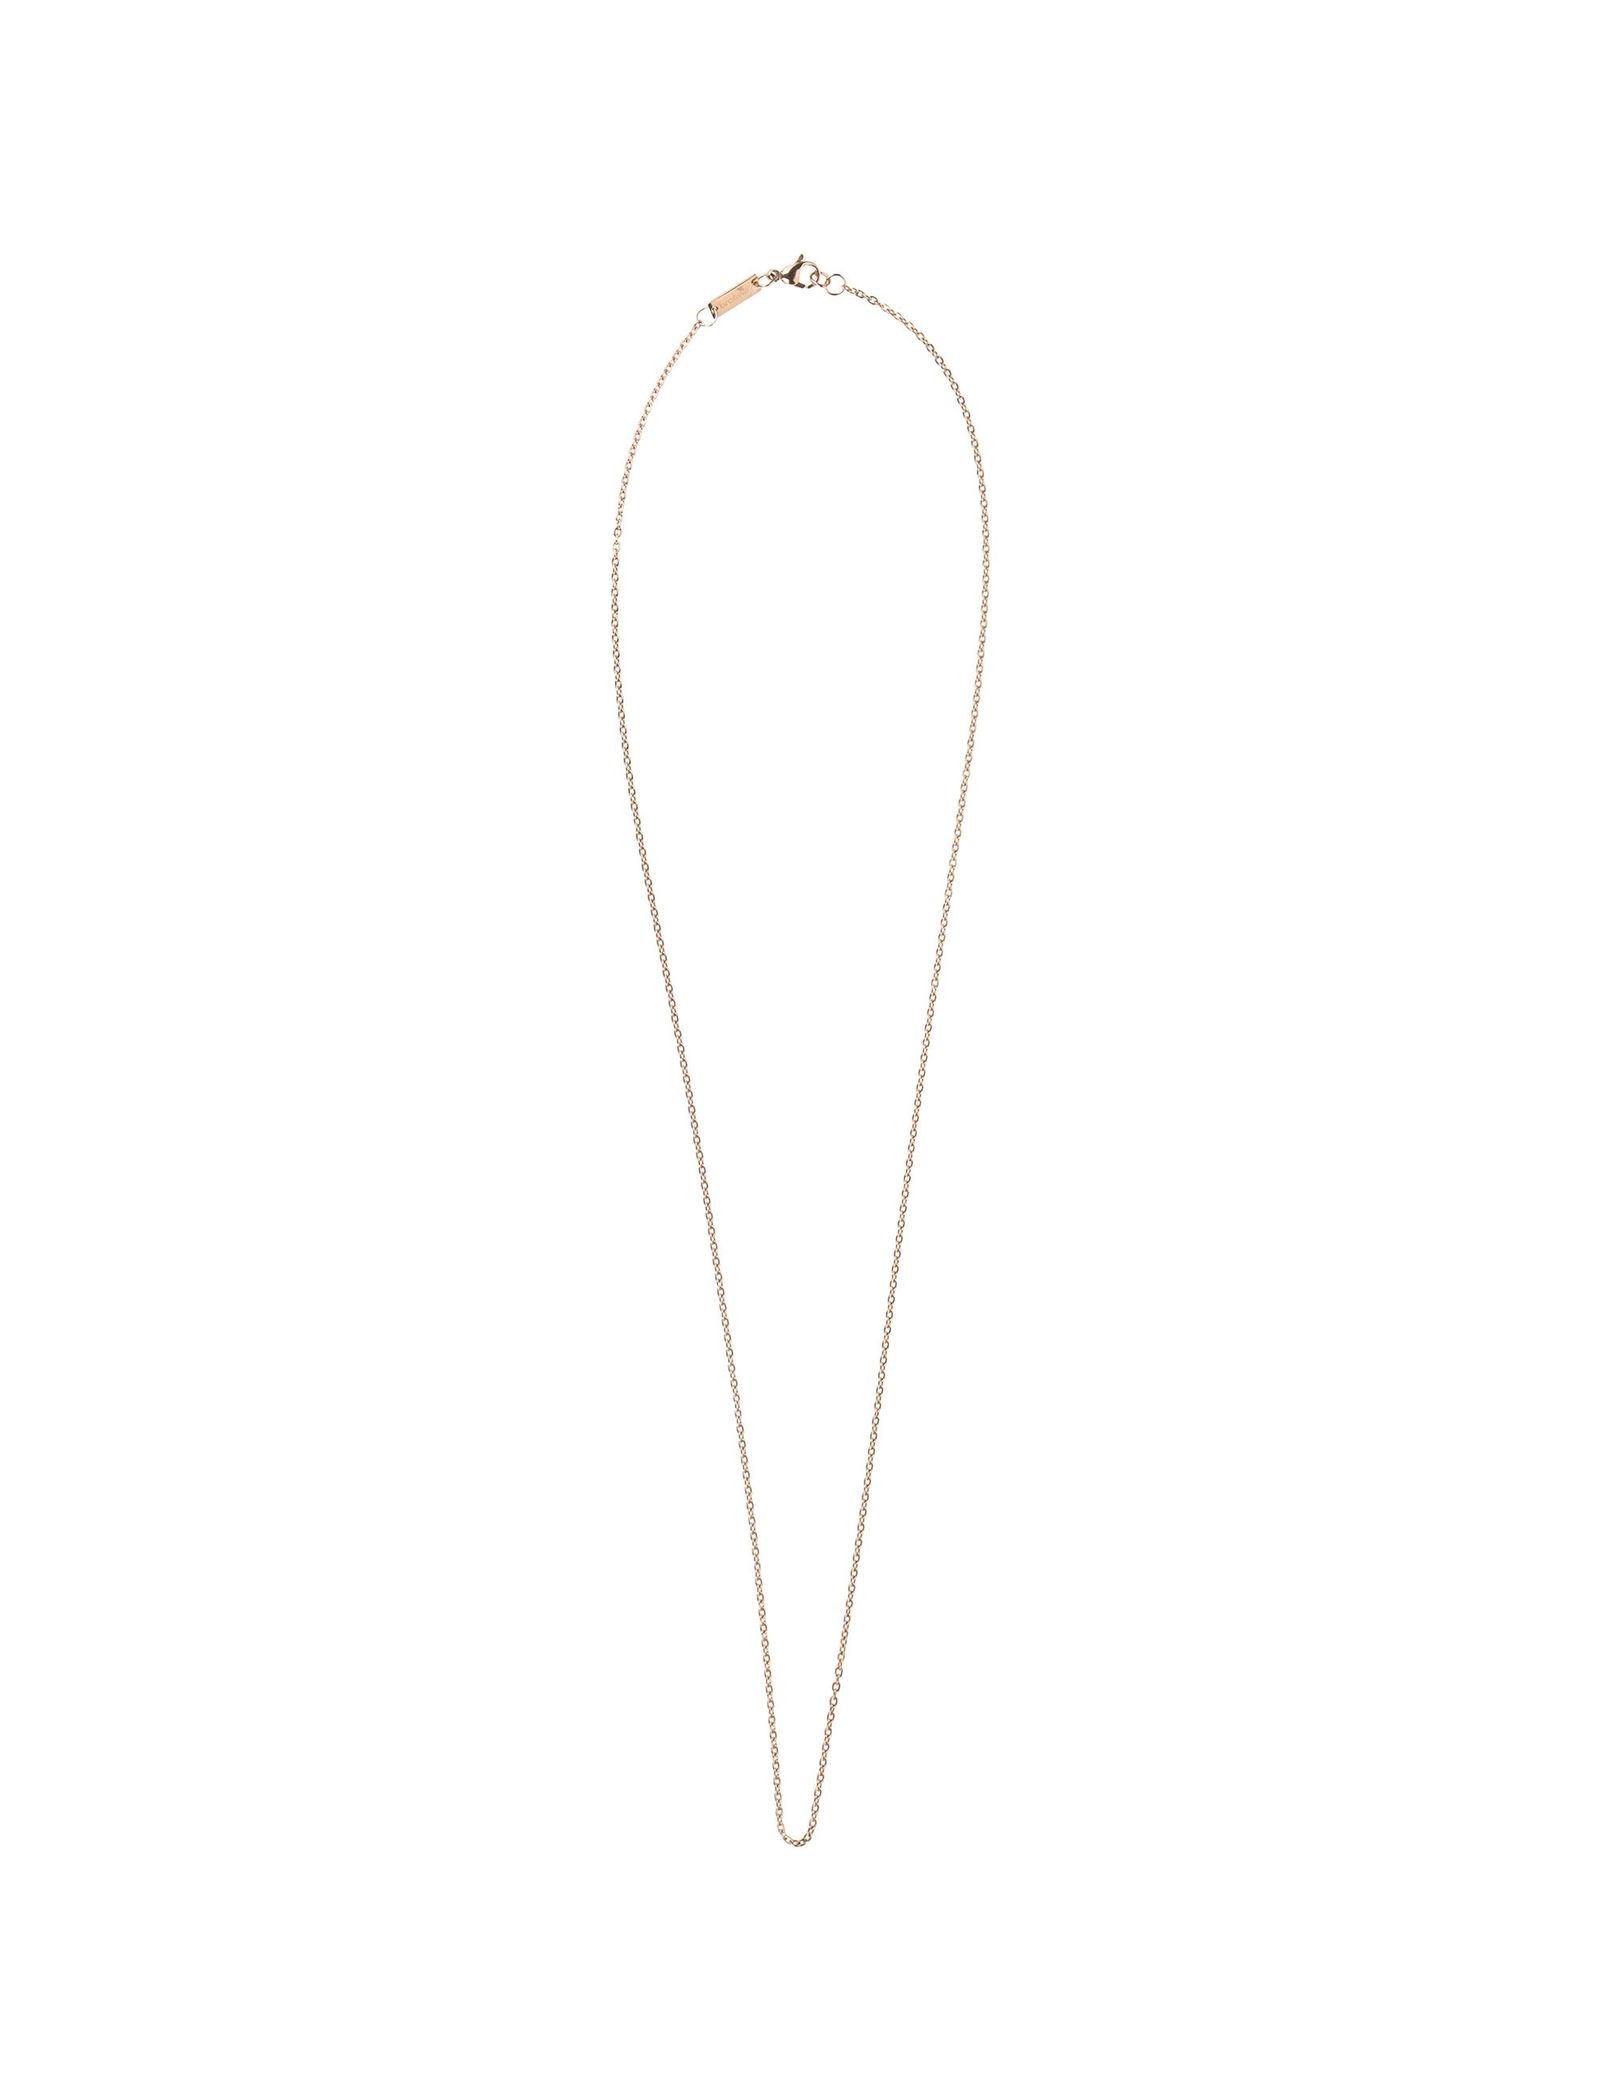 گردنبد زنجیری استیل زنانه - برازوی تک سایز - طلايي - 2